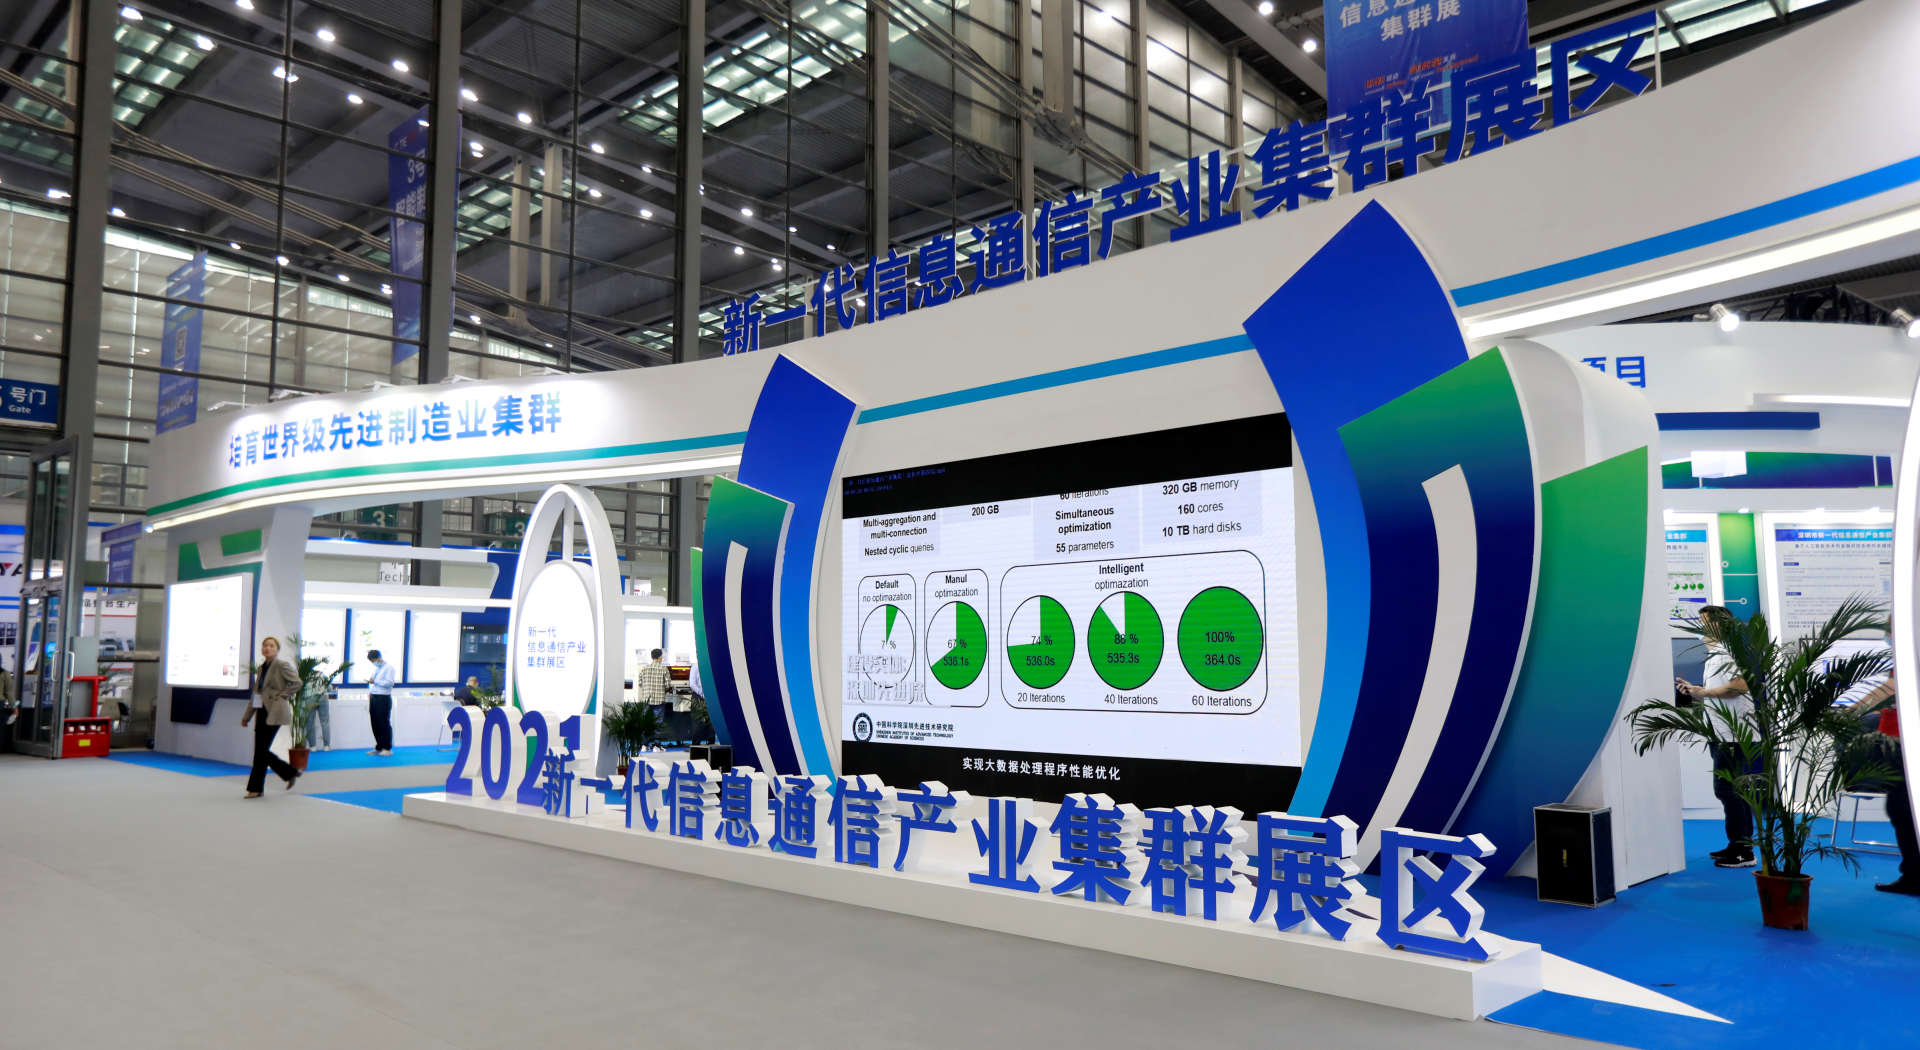 5G+应用示范亮相！深圳市新一代信息通信产业集群展亮相第九届电博会